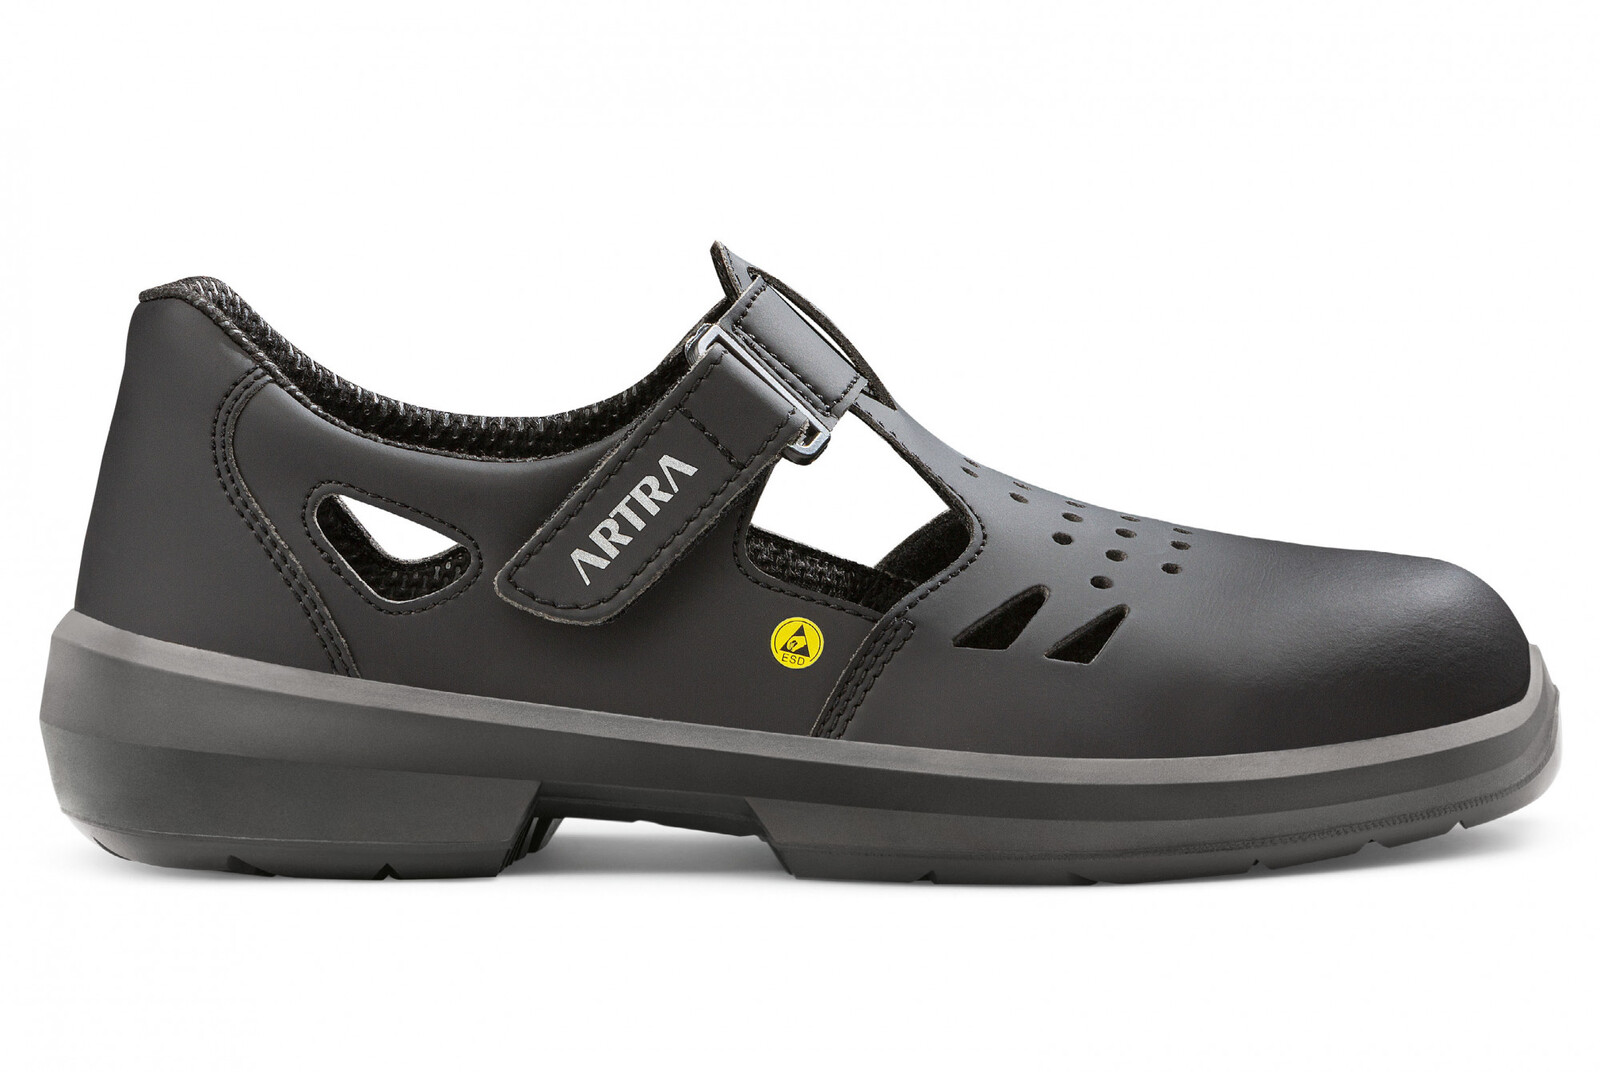 Bezpečnostné sandále Artra Armen 9008 6760 S1 SRC ESD MF - veľkosť: 48, farba: čierna